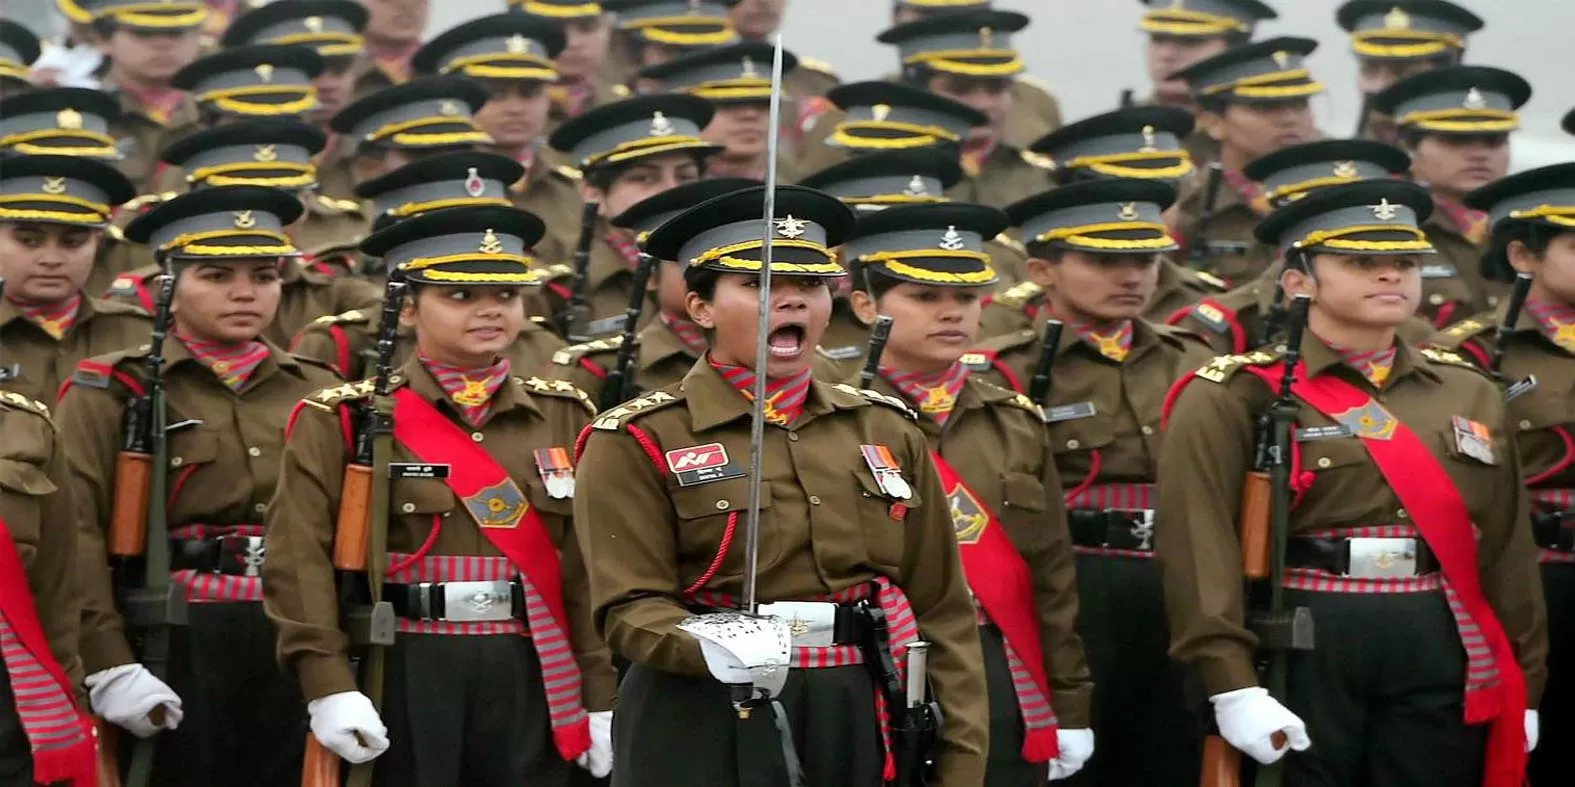 अगले साल की गणतंत्र दिवस परेड की कमान संभालेंगी महिलाएं, बैंड से झांकियों तक दिखेगी नारी शक्ति, रक्षा मंत्रालय ने लिखी चिट्‌ठी